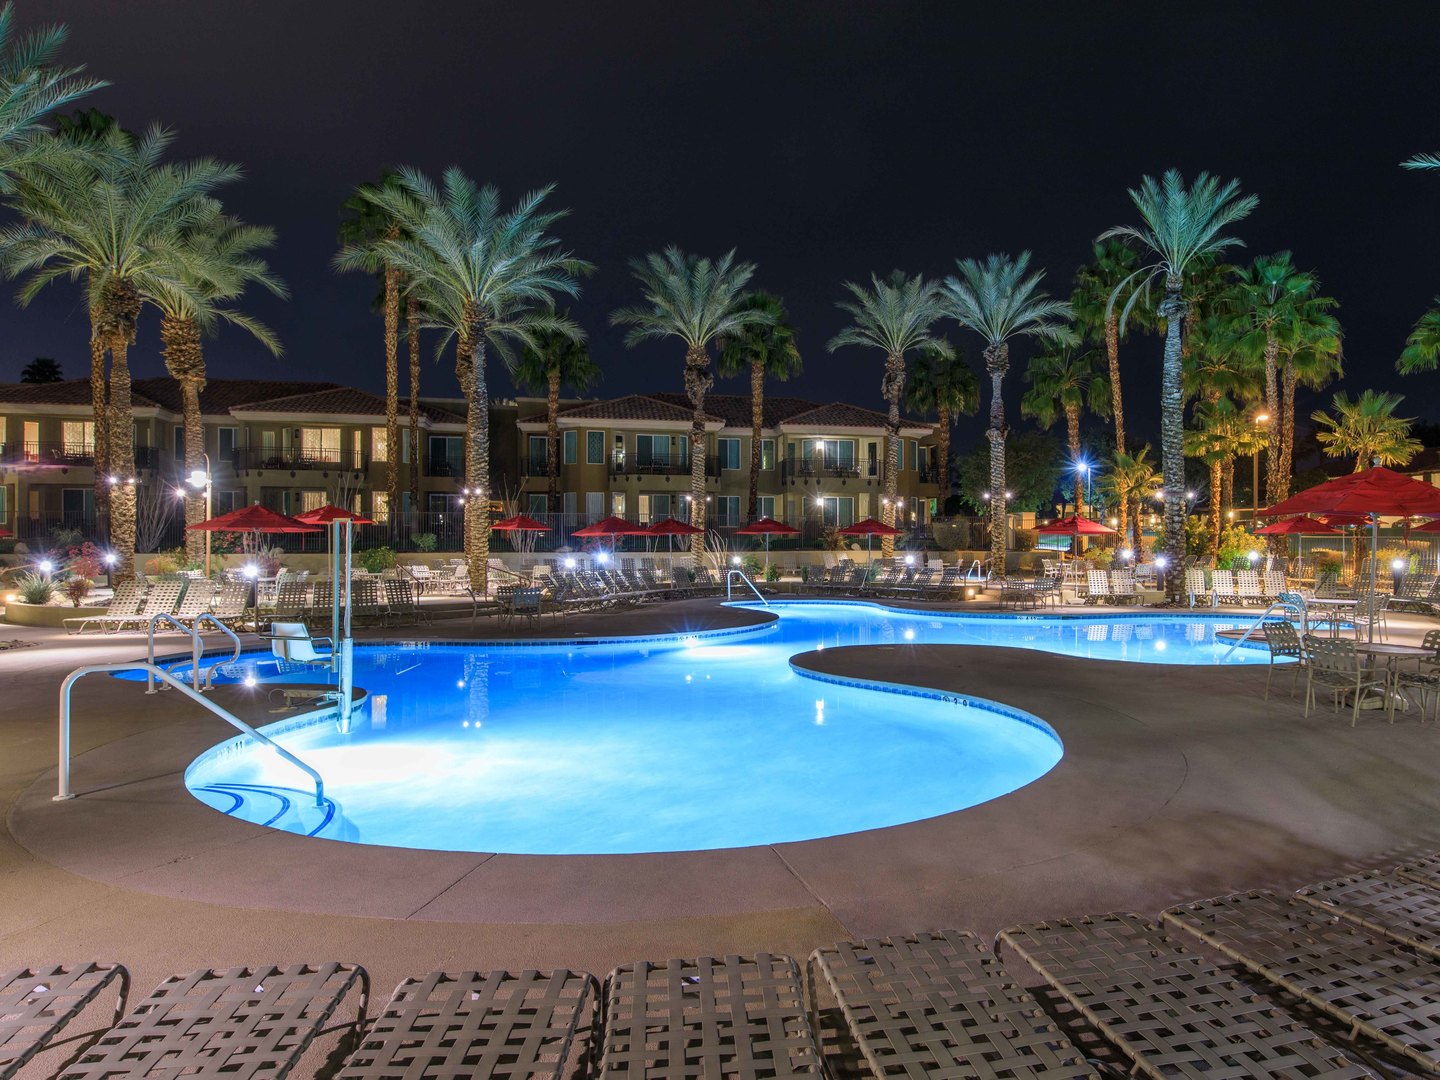 Marriott's Desert Springs Villas II Pool. Marriott's Desert Springs Villas II is located in Palm Desert, California United States.